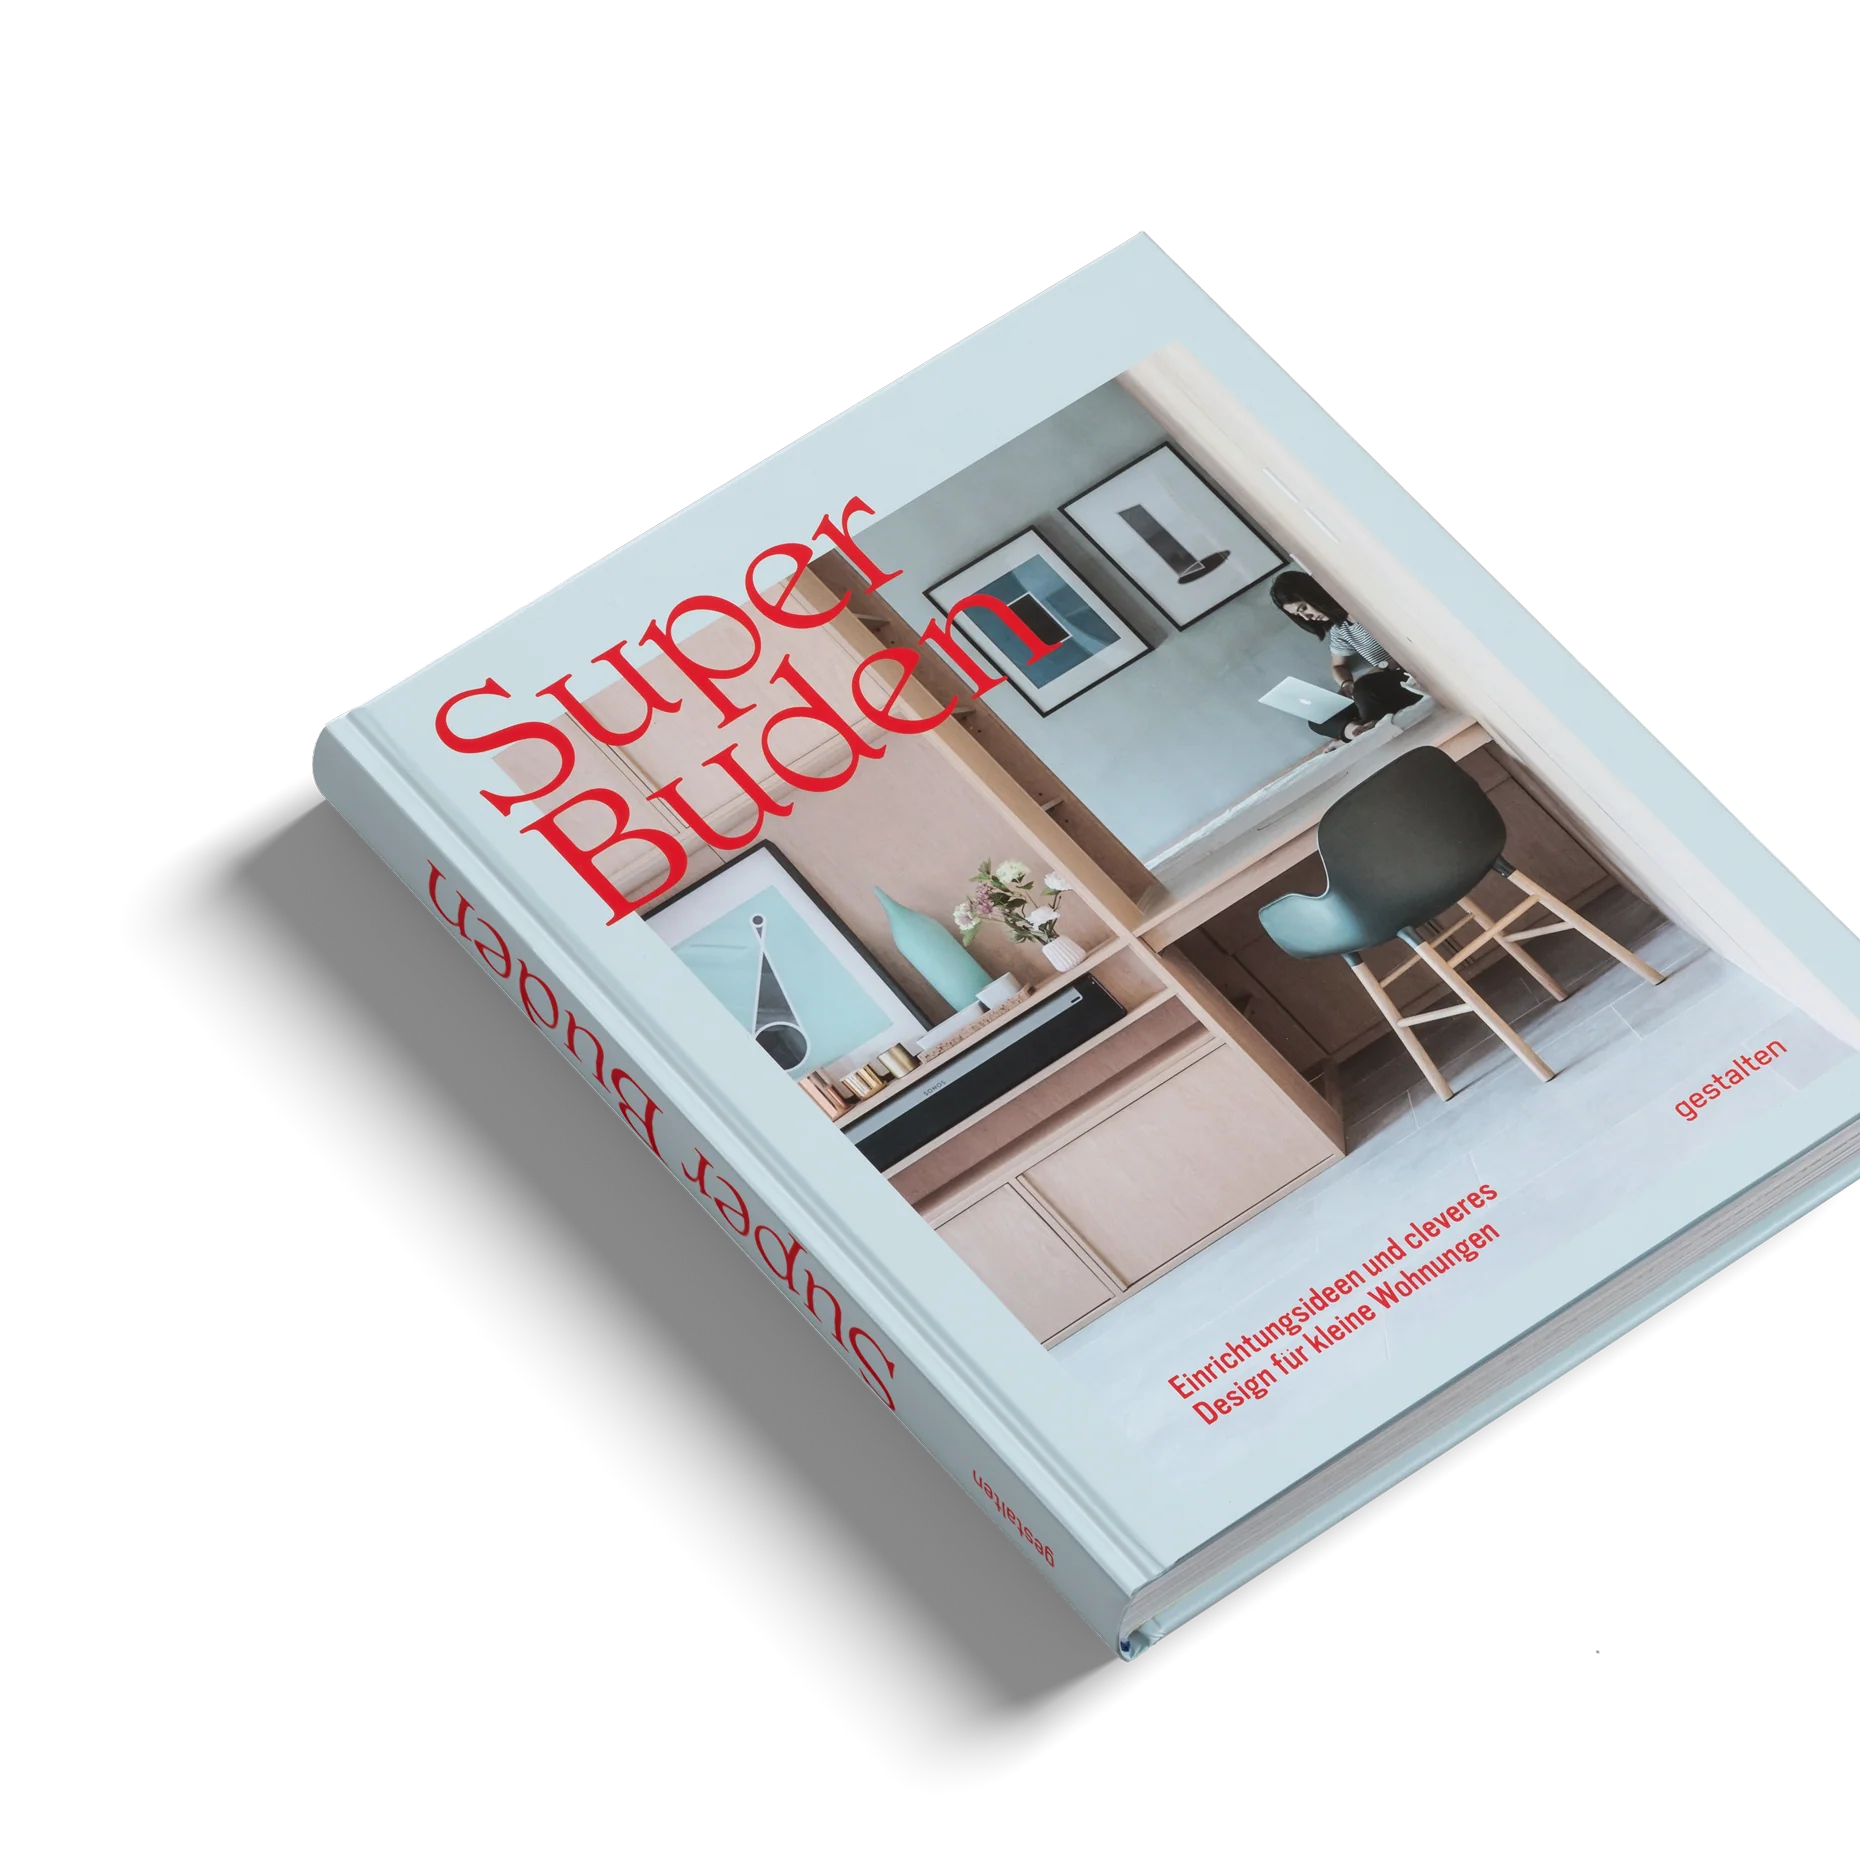 Super Buden - Einrichtungsideen und cleveres Design für kleine Wohnungen